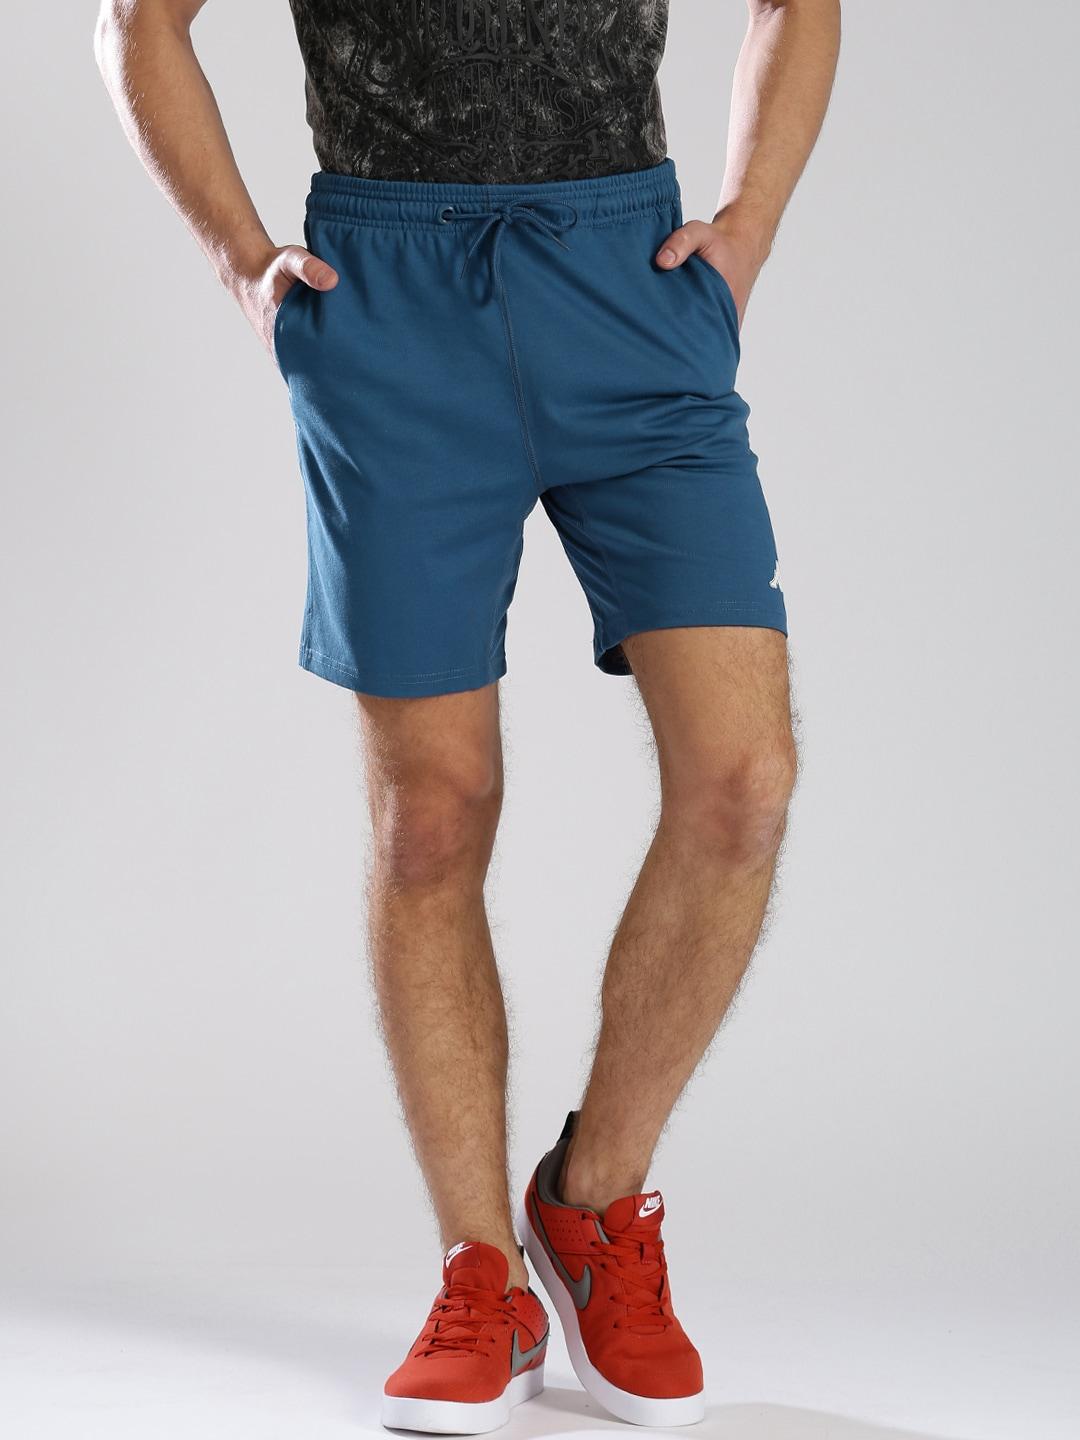 kappa-blue-shorts